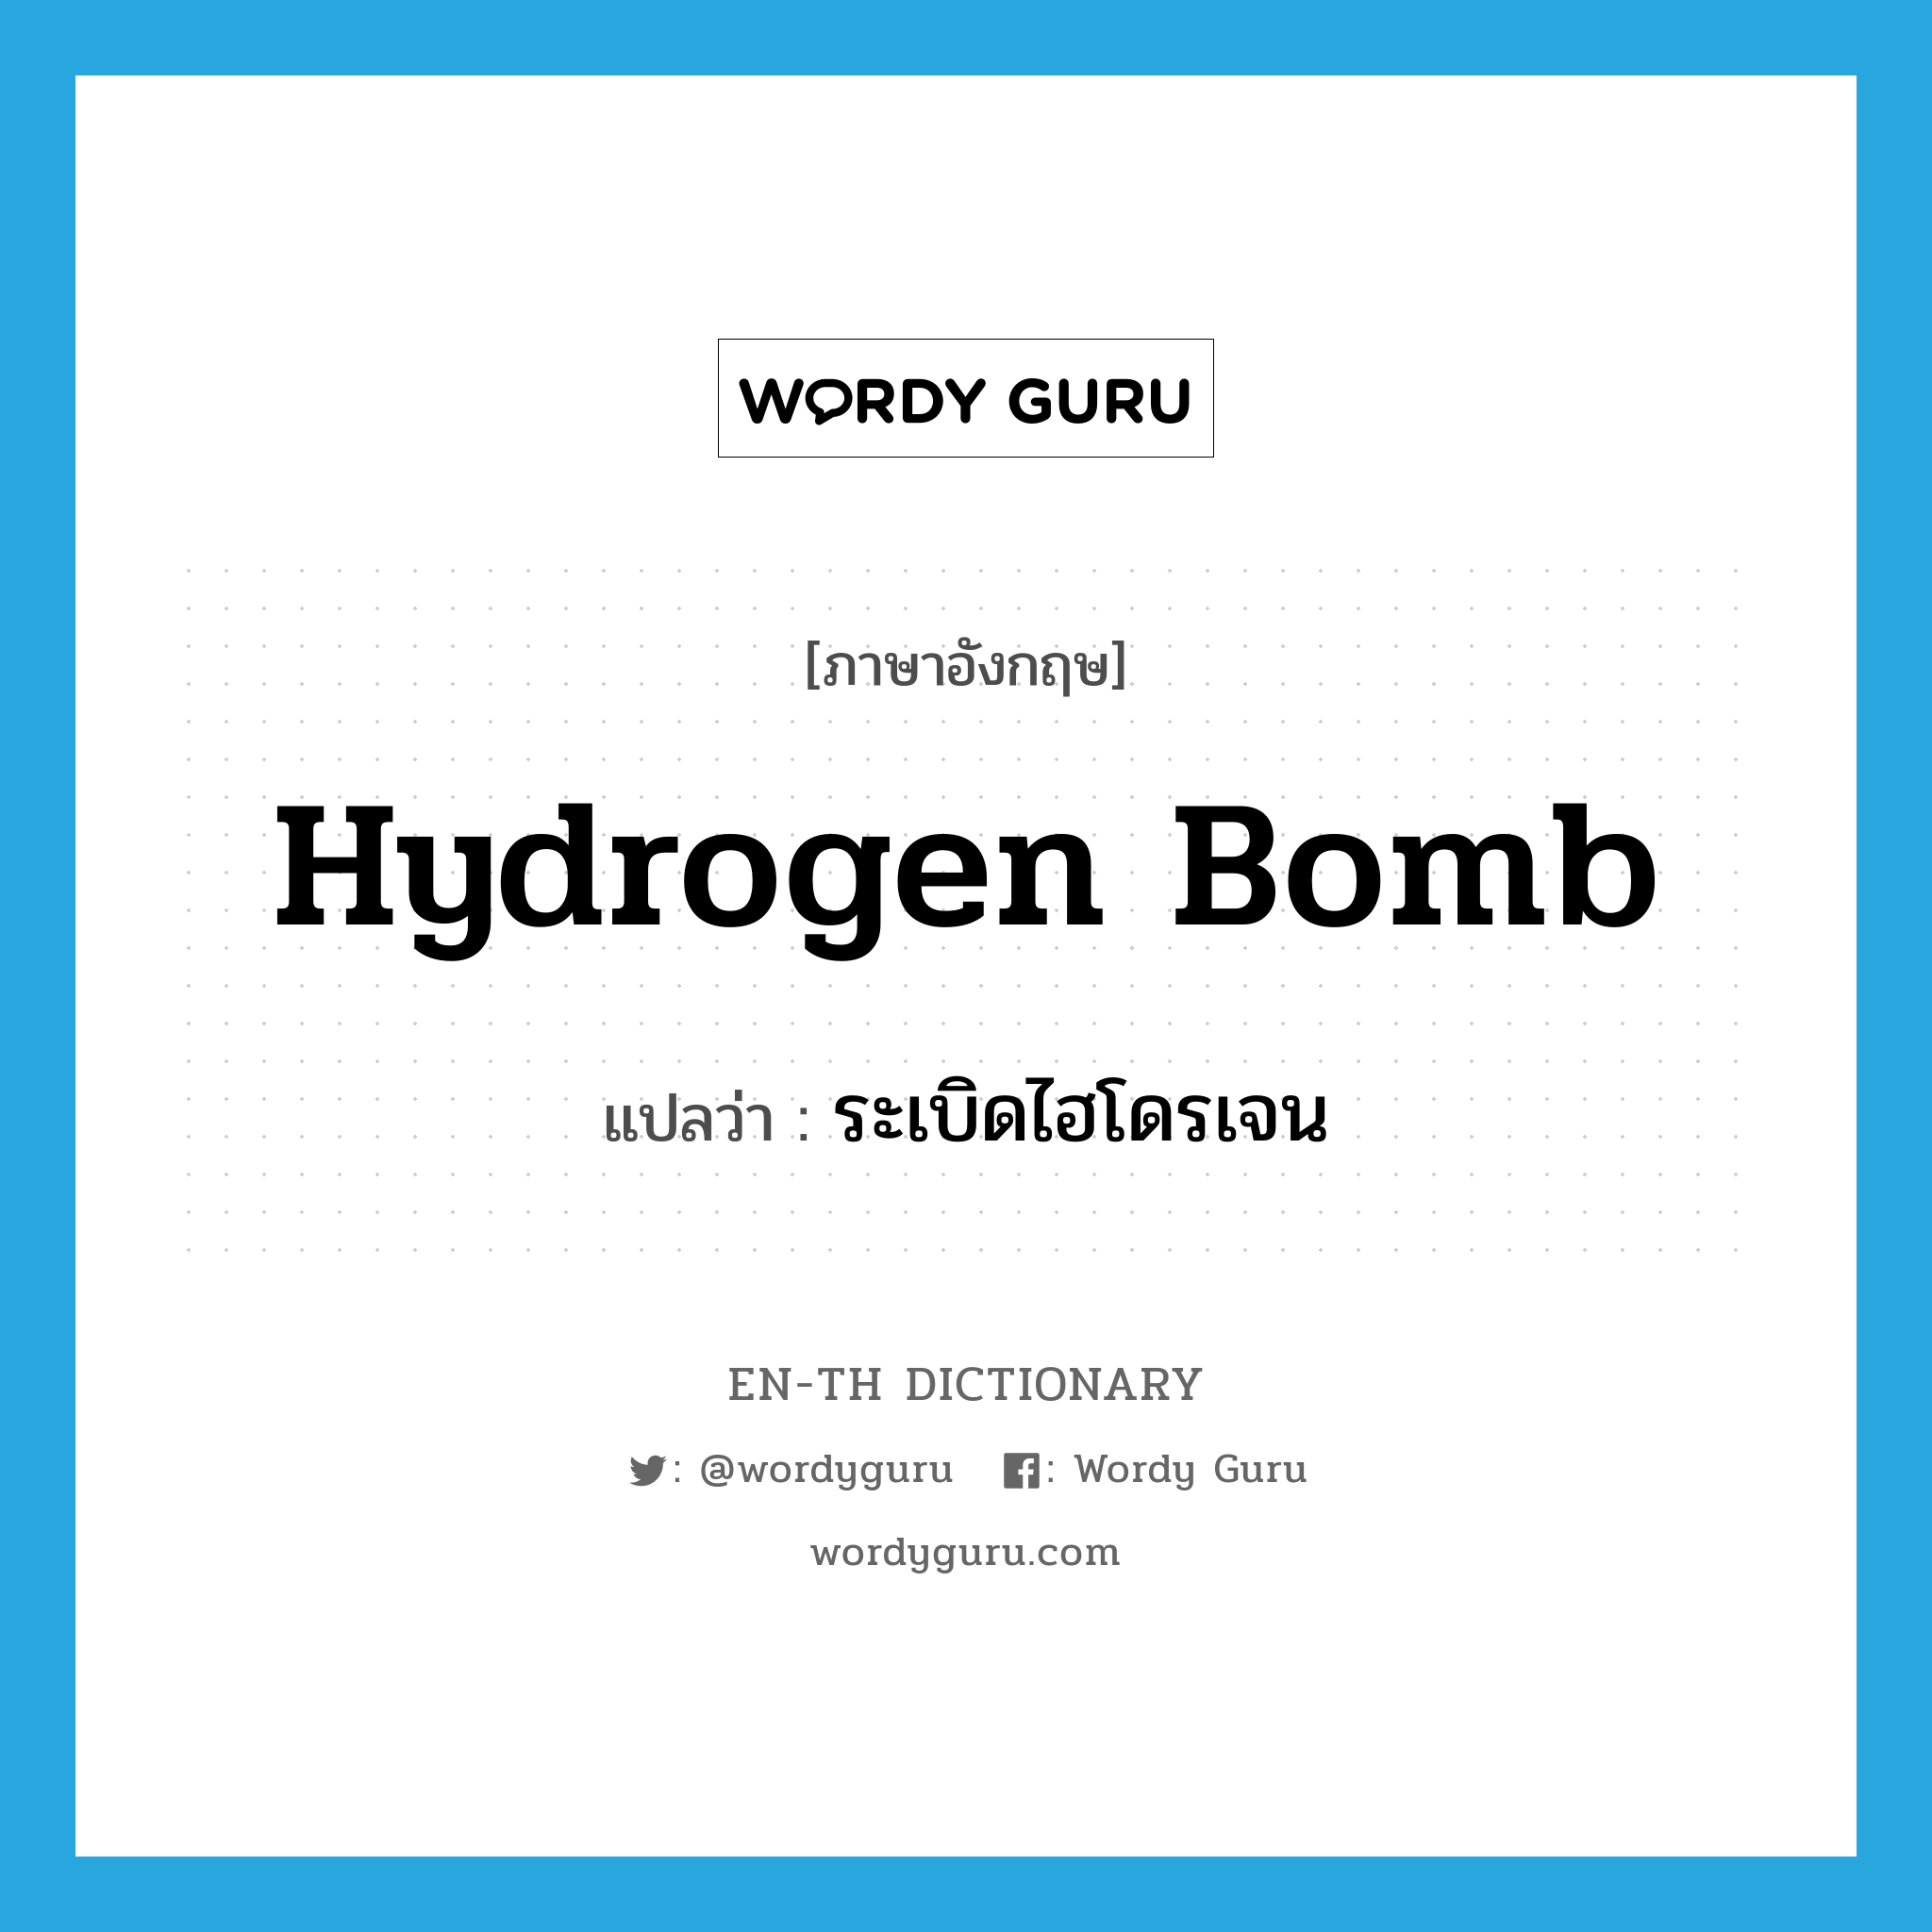 ระเบิดไฮโดรเจน ภาษาอังกฤษ?, คำศัพท์ภาษาอังกฤษ ระเบิดไฮโดรเจน แปลว่า hydrogen bomb ประเภท N หมวด N